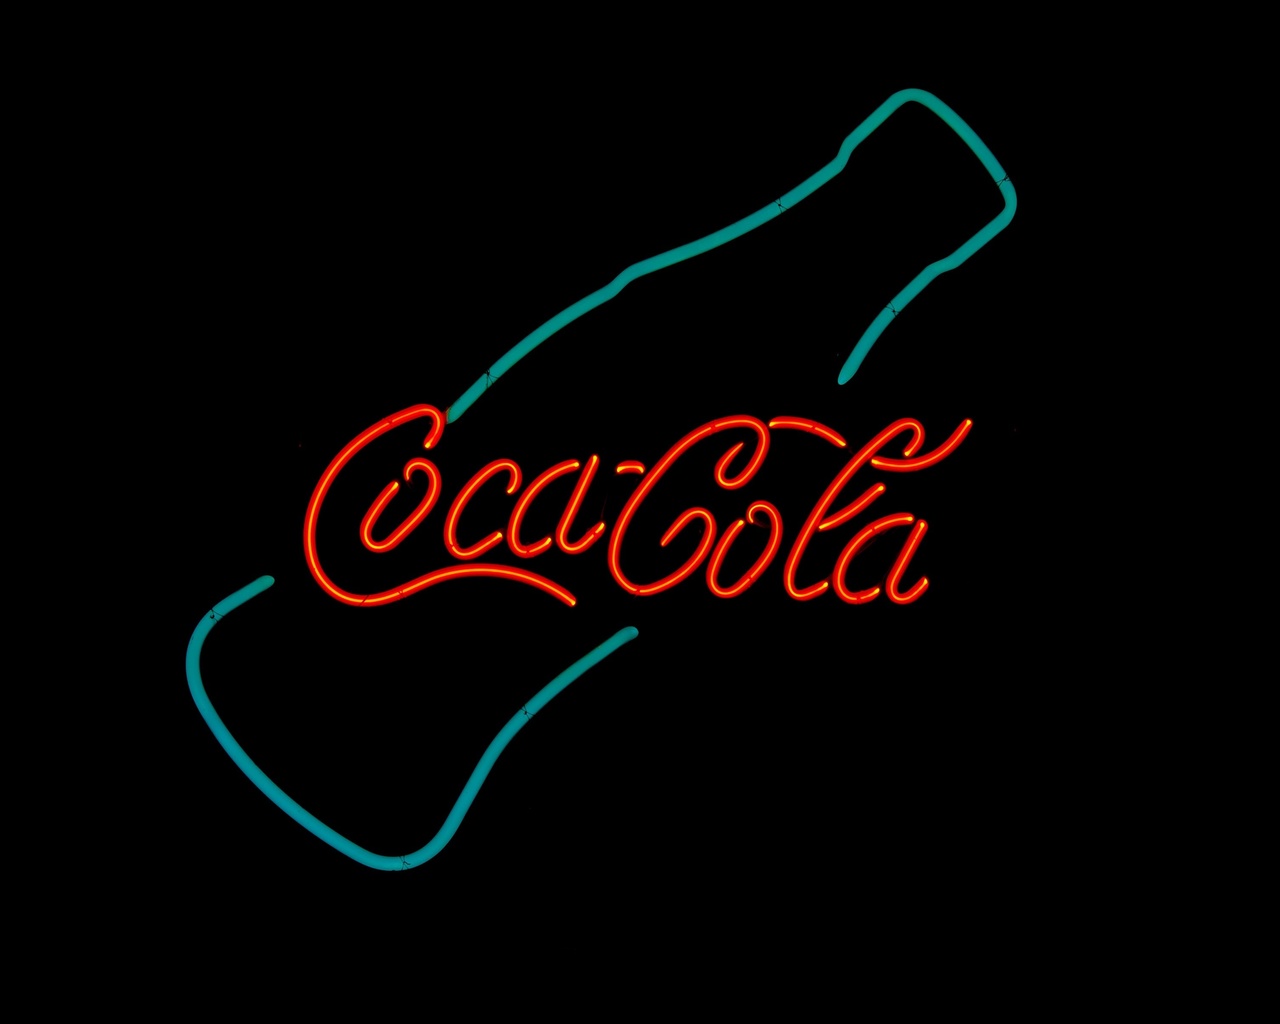 coca-cola, logo, neon